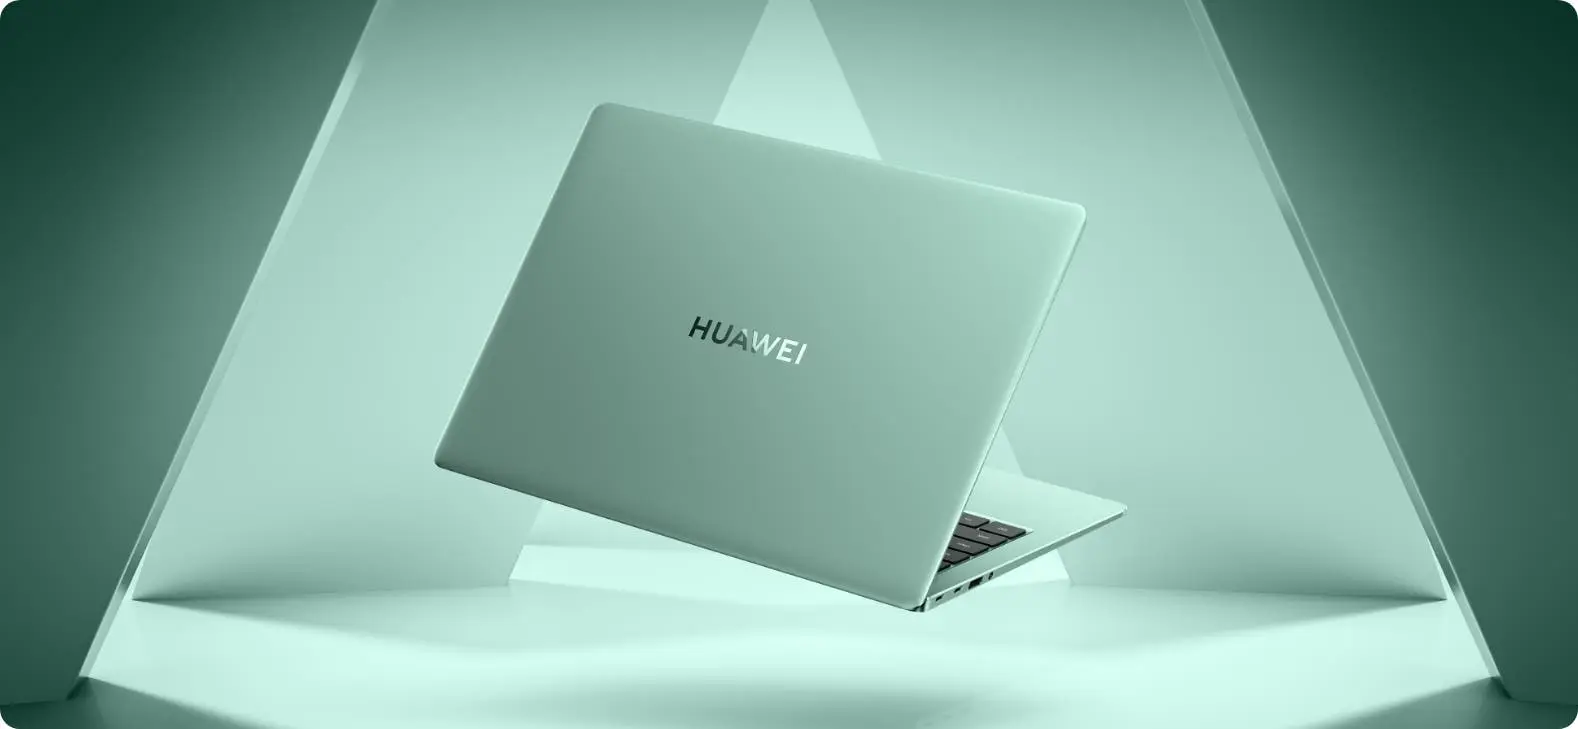 Huawei ra mắt cấu hình Intel Core i9 12900H cho MateBook 14s